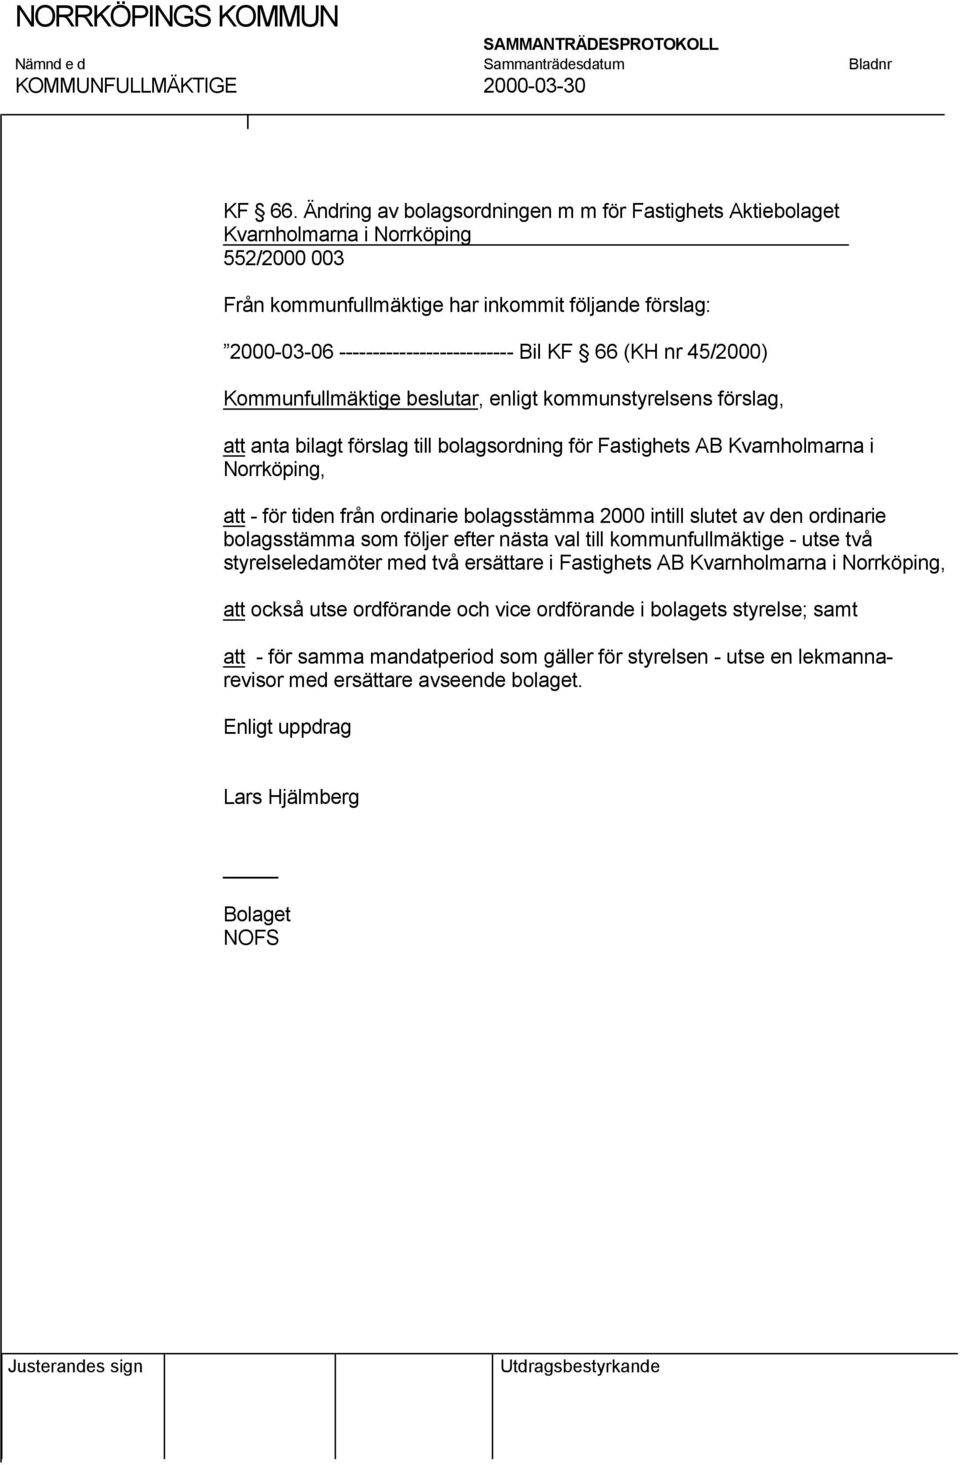 66 (KH nr 45/2000) Kommunfullmäktige beslutar, enligt kommunstyrelsens förslag, att anta bilagt förslag till bolagsordning för Fastighets AB Kvarnholmarna i Norrköping, att - för tiden från ordinarie